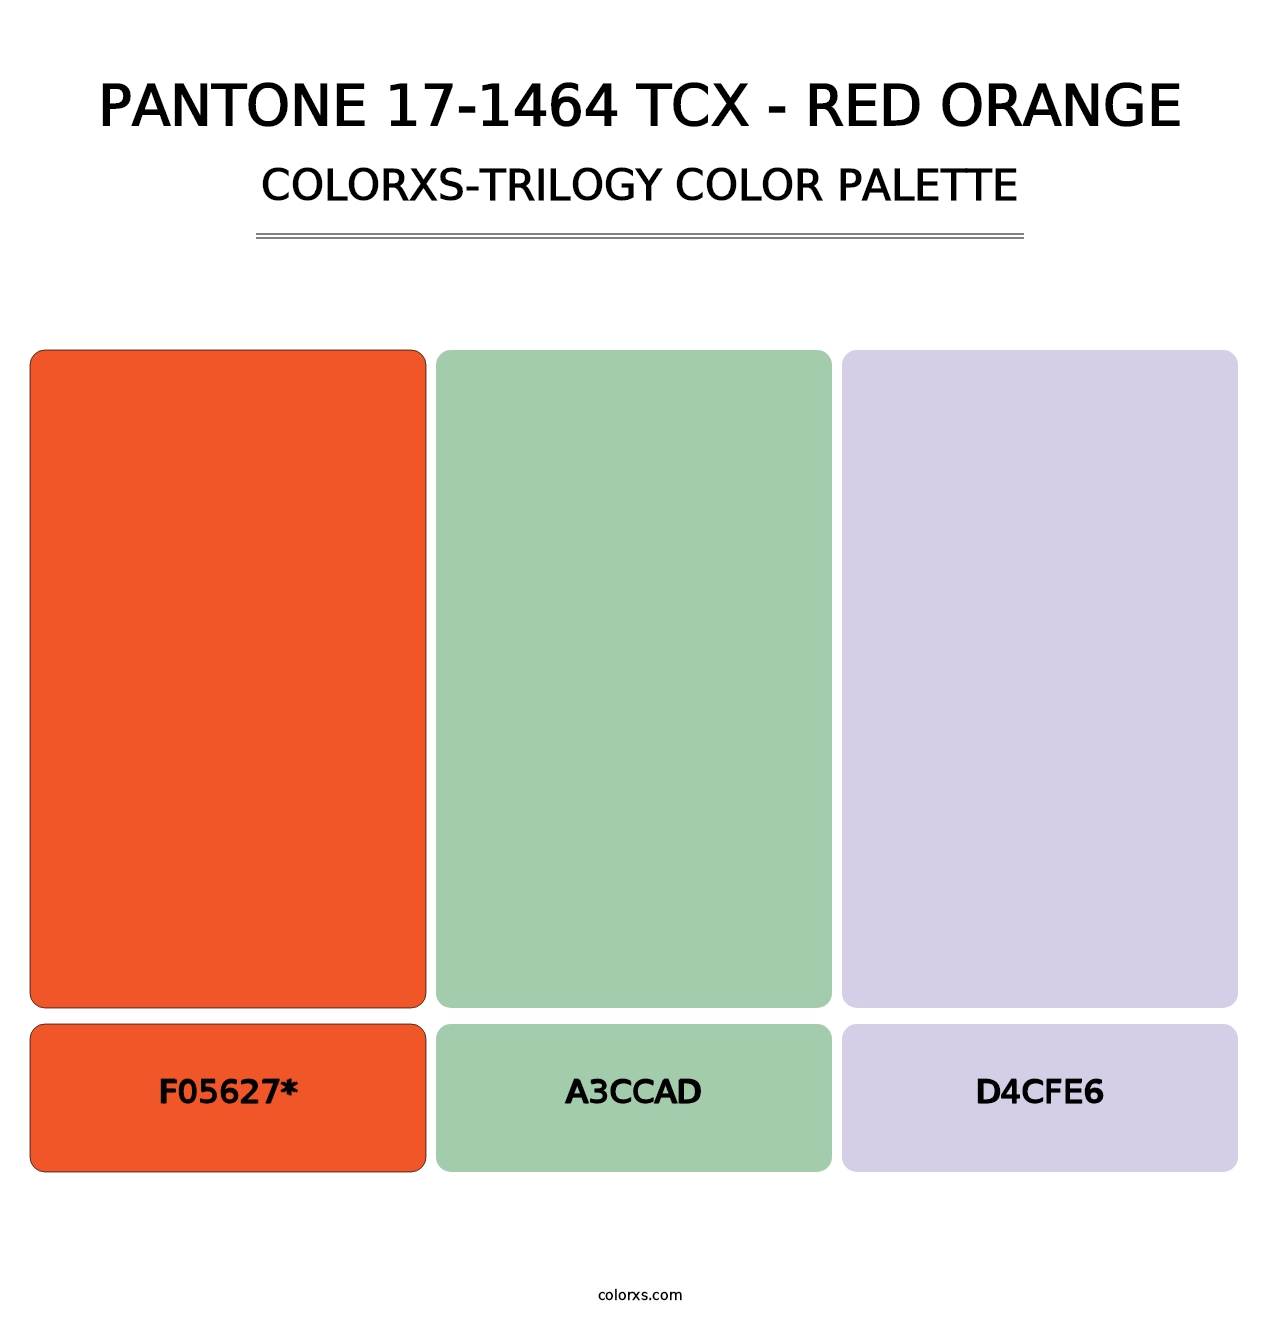 PANTONE 17-1464 TCX - Red Orange - Colorxs Trilogy Palette